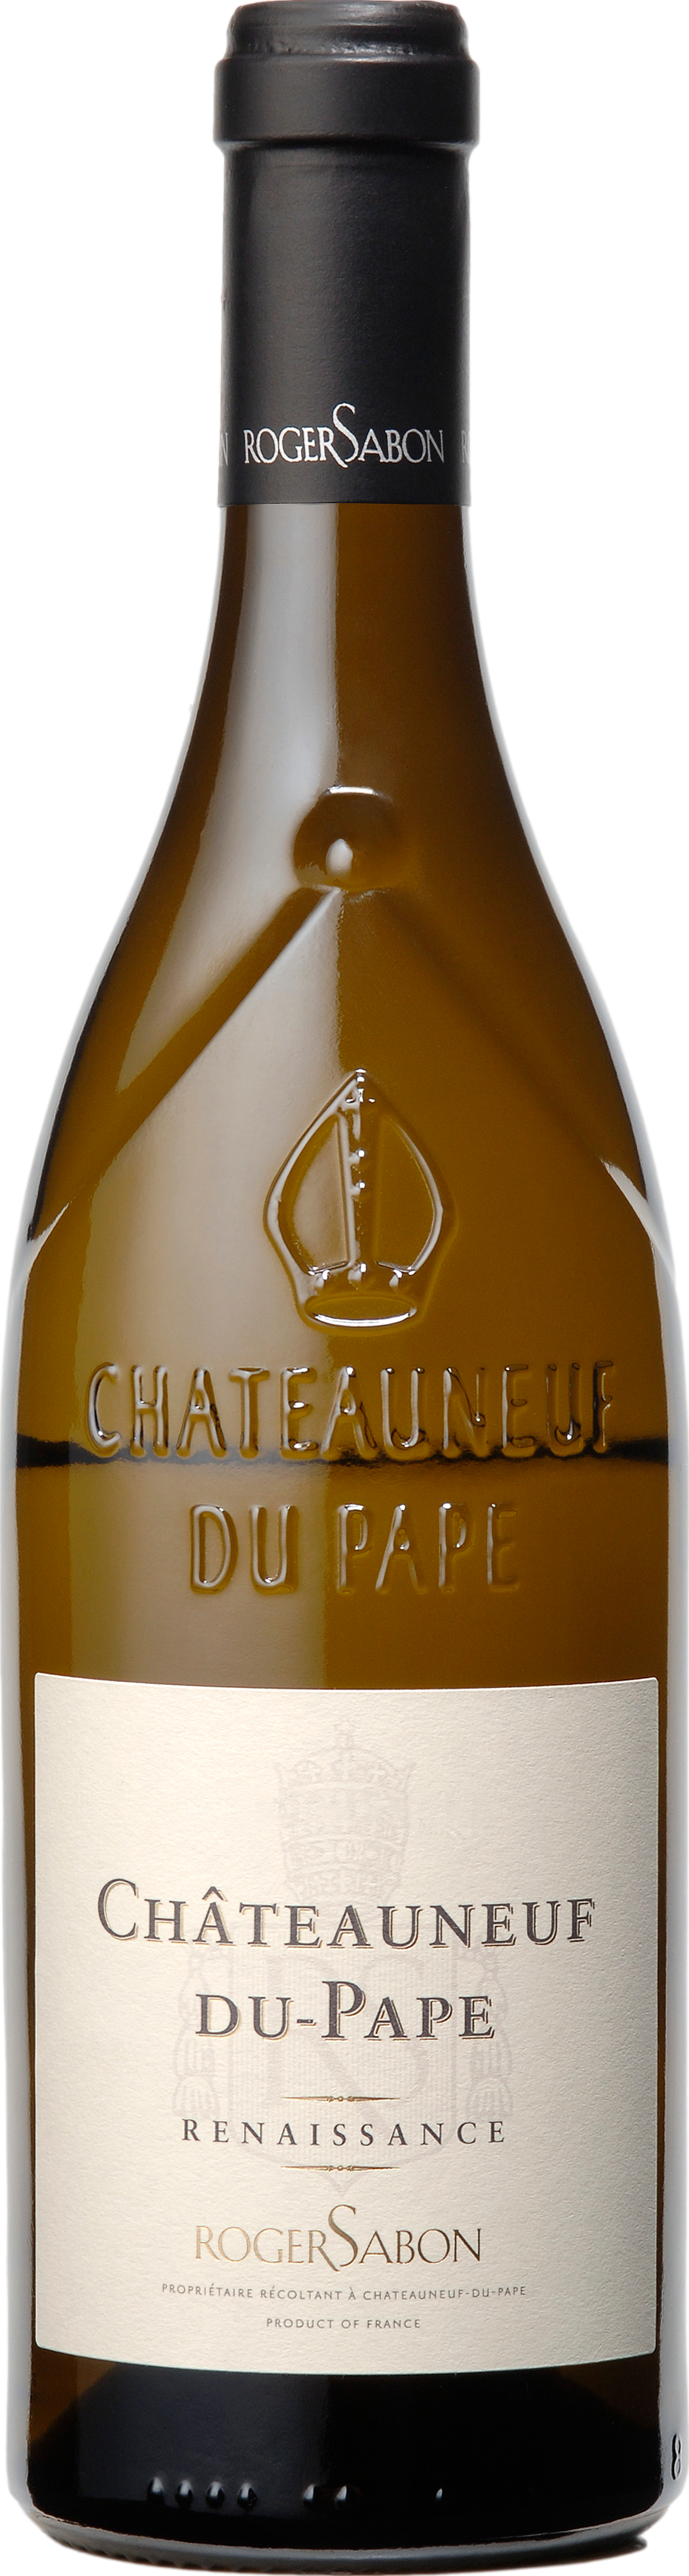 Blanc 2021 günstig Kaufen-Roger Sabon Chateauneuf du Pape Renaissance Blanc 2021. Roger Sabon Chateauneuf du Pape Renaissance Blanc 2021 . 